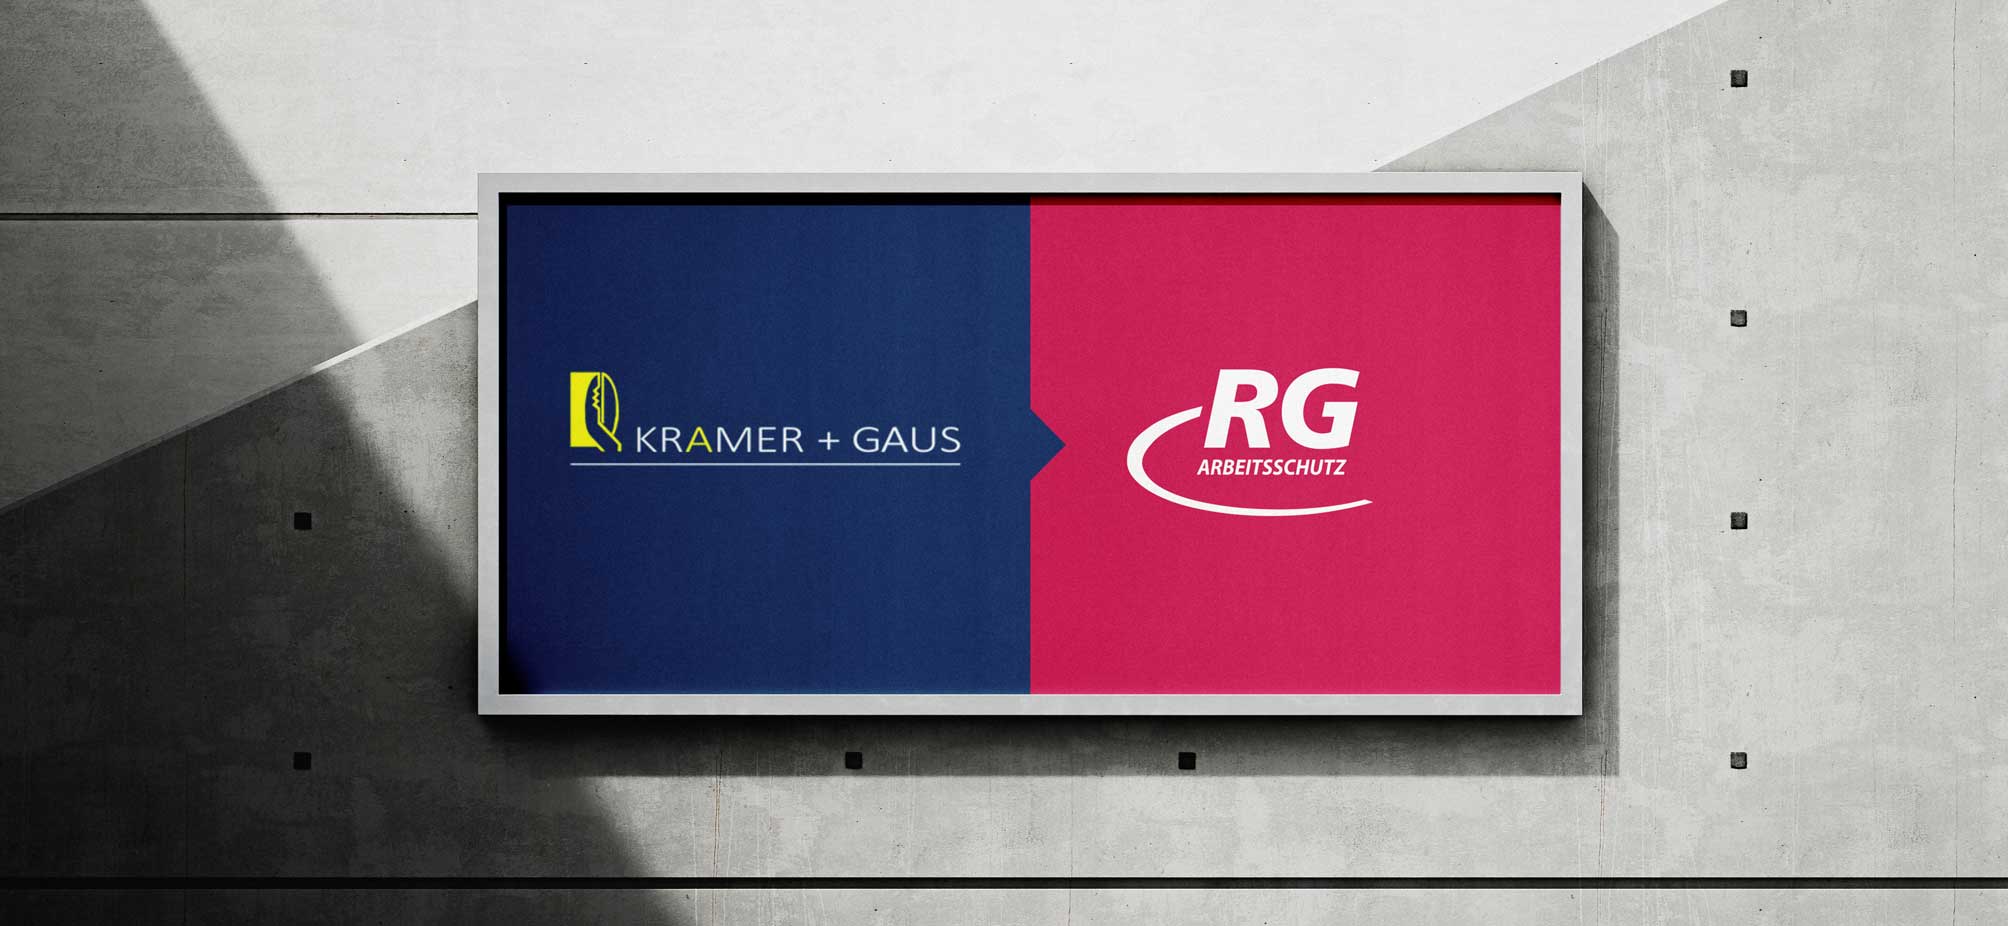 Schild mit den Logos Kramer und Gaus und RG Arbeitsschutz